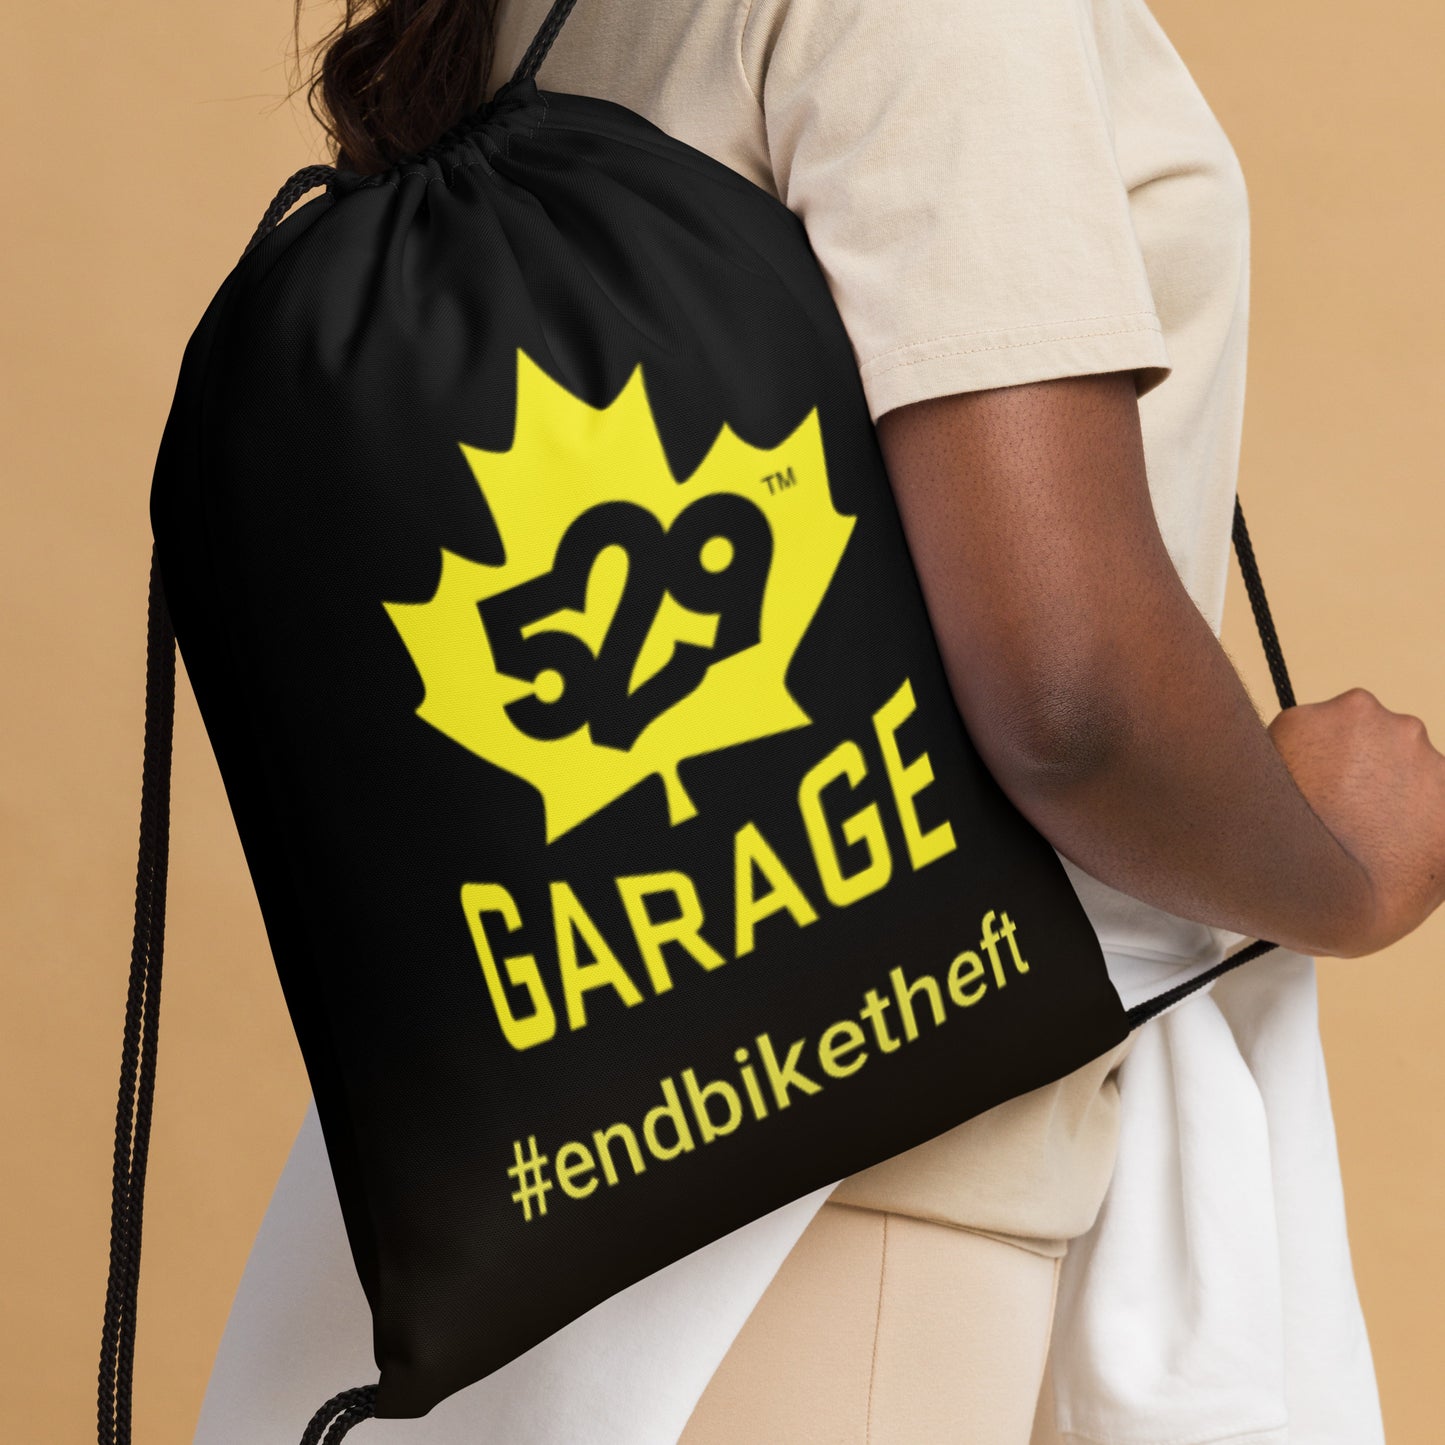 Bolsa con cordón para exteriores #endbiketheft (logotipo canadiense)